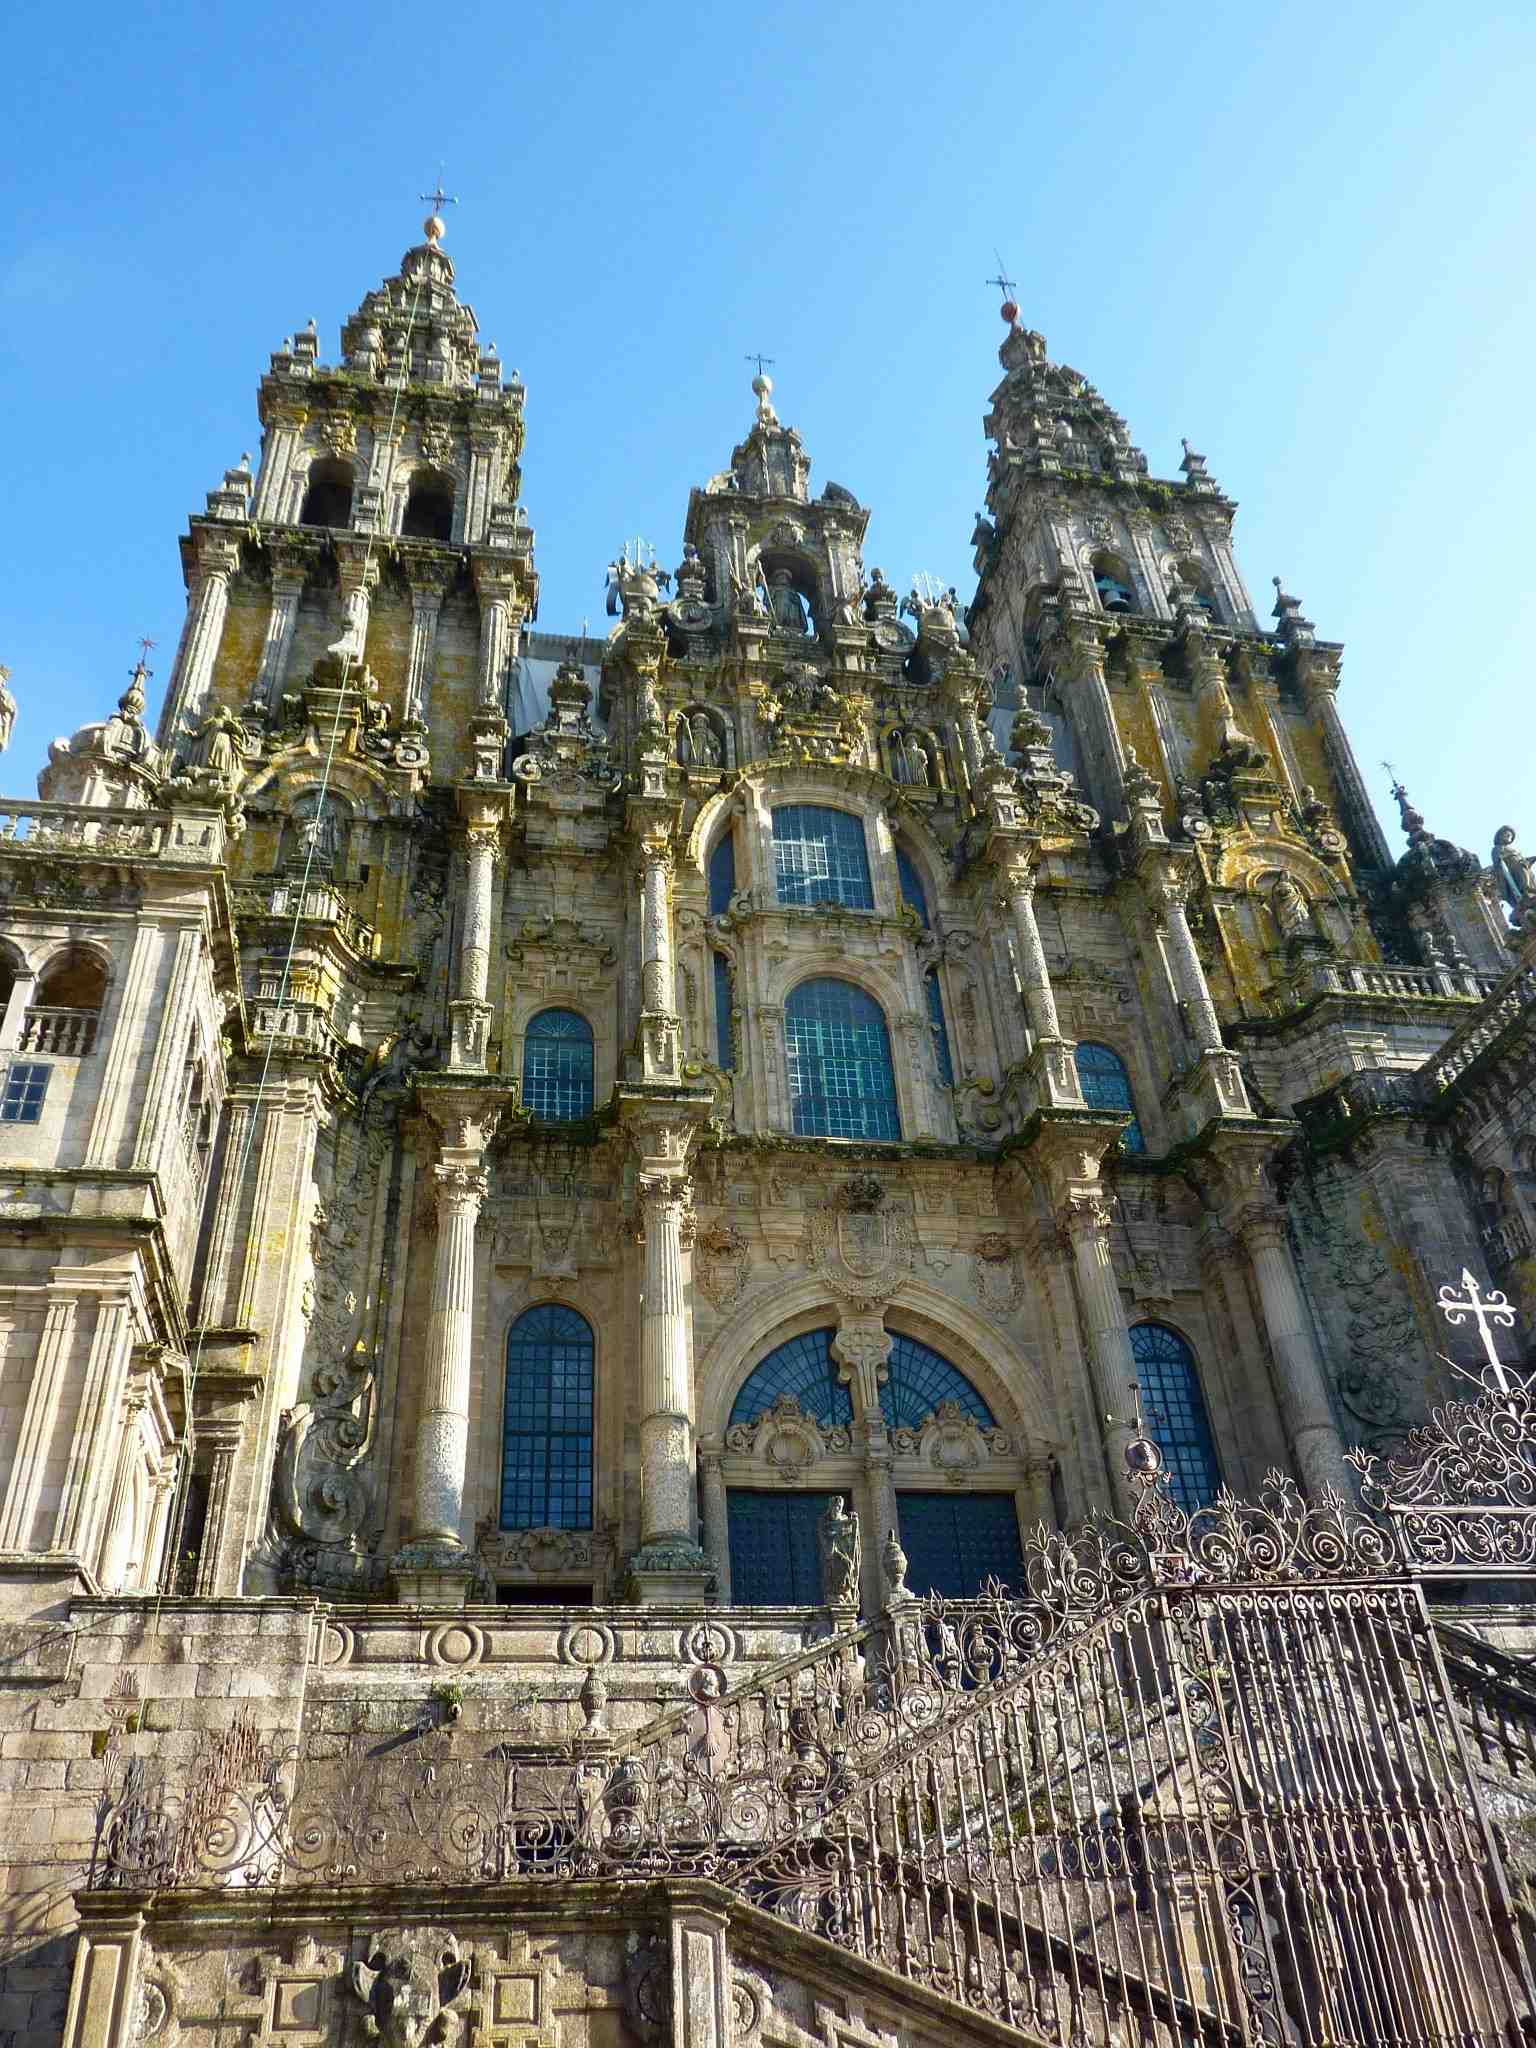 The Church of Santiago de Compostela